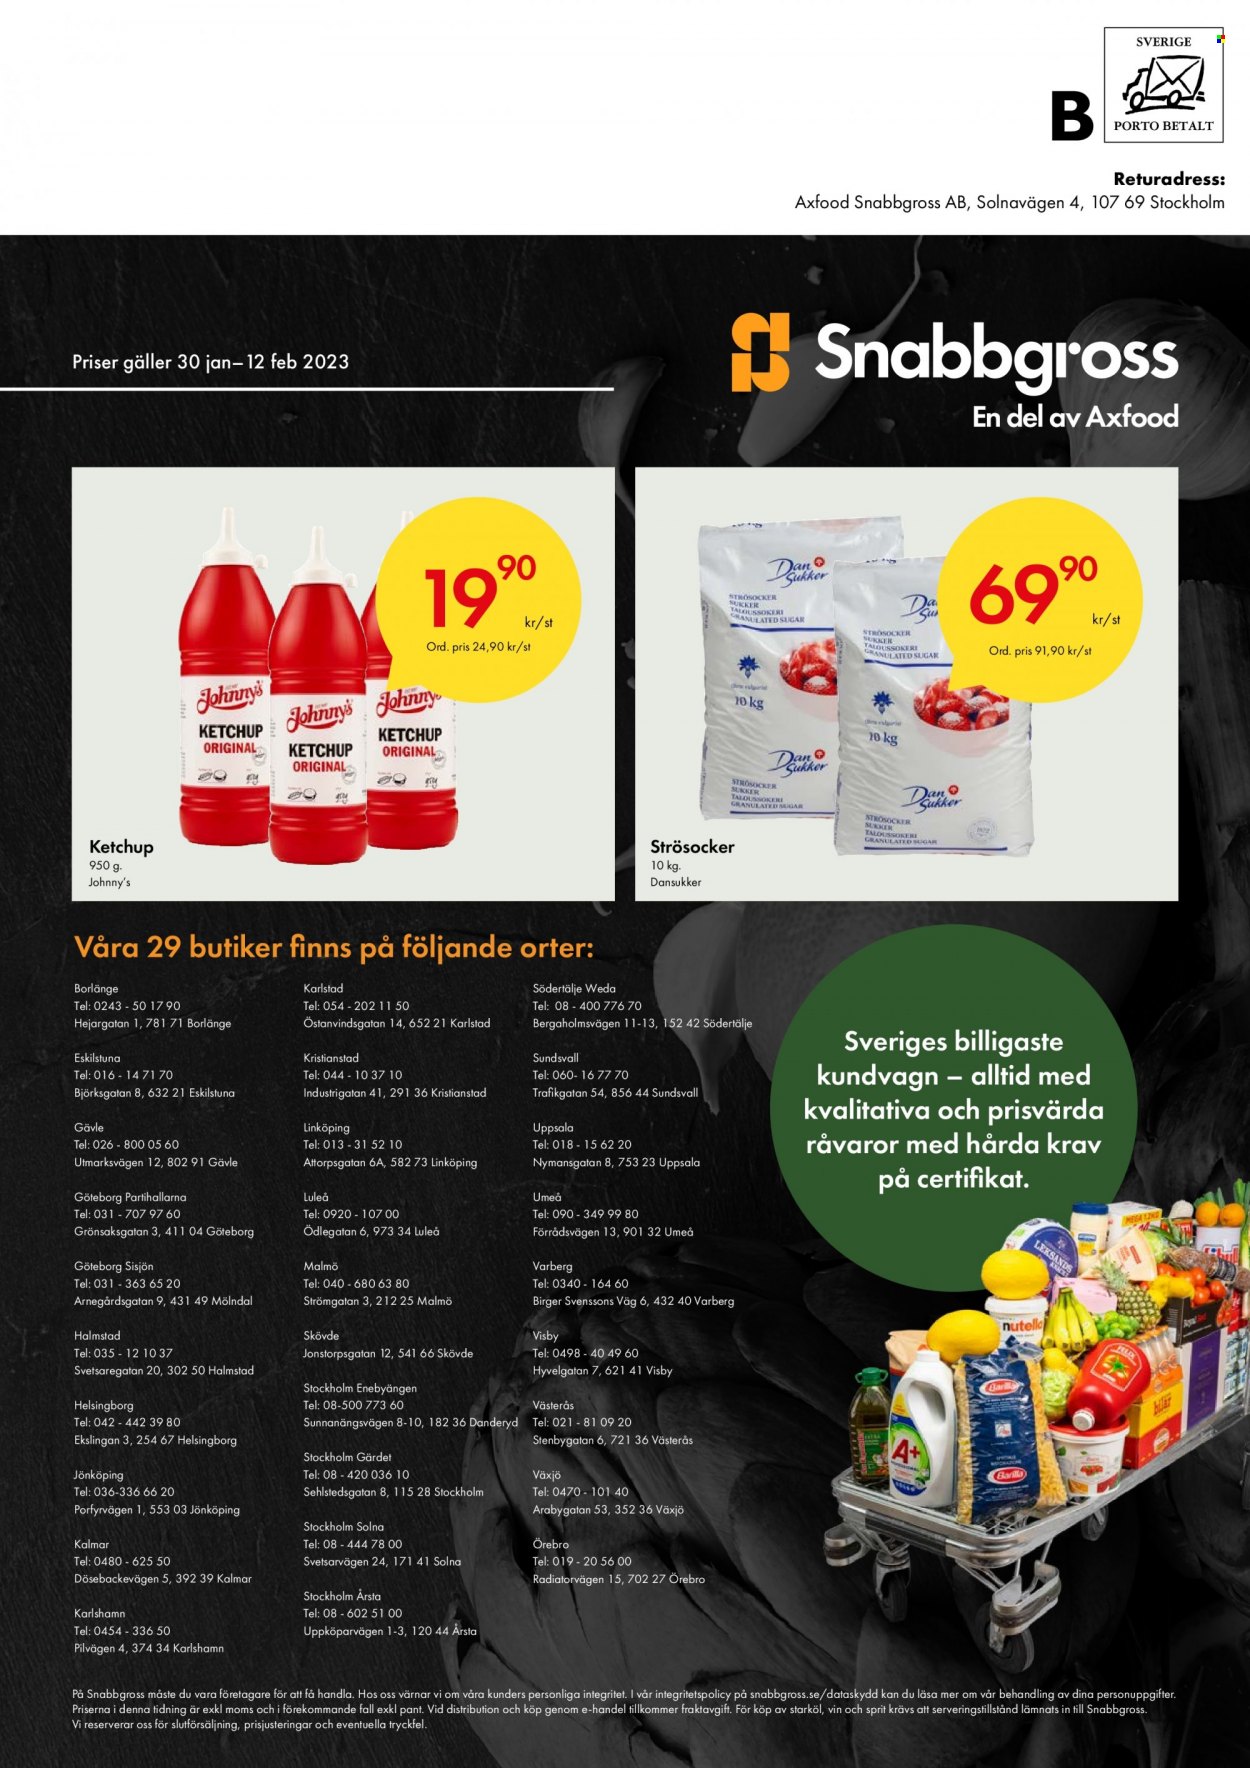 thumbnail - Axfood Snabbgross reklamblad - 30/1 2023 - 12/2 2023 - varor från reklamblad - ketchup, vin. Sida 12.